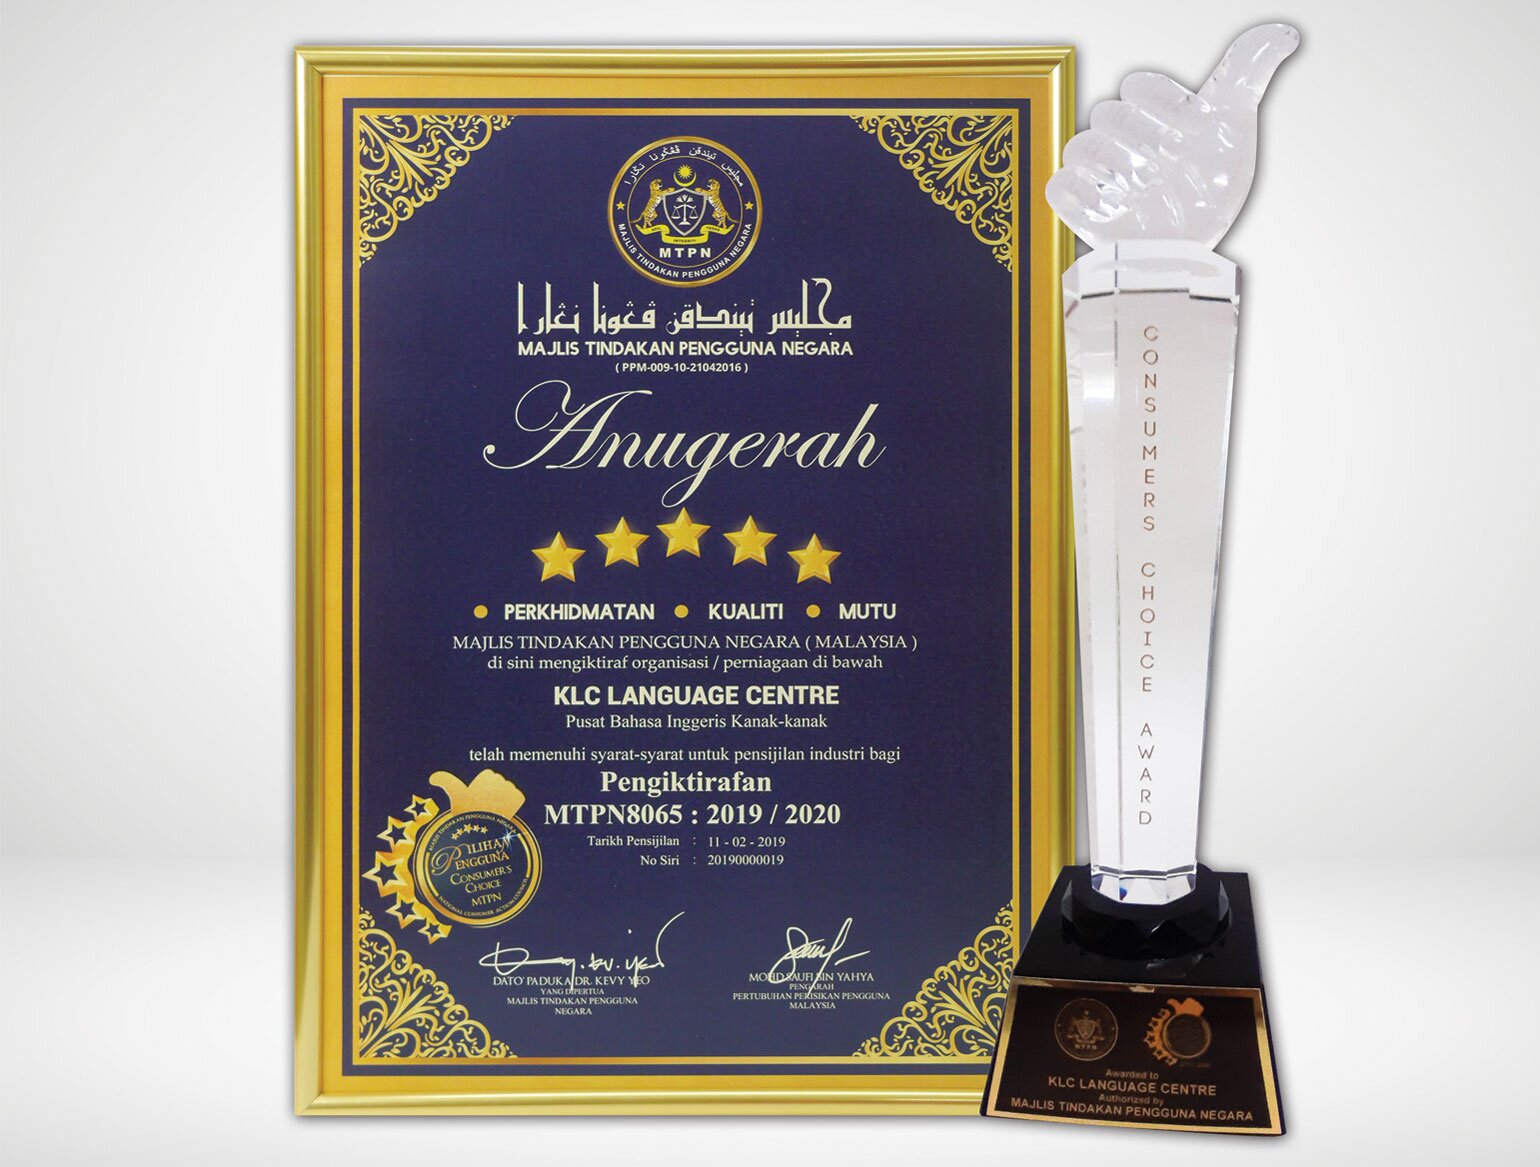 Awarded the Anugerah Pilihan Pengguna MTPN 2019/2020